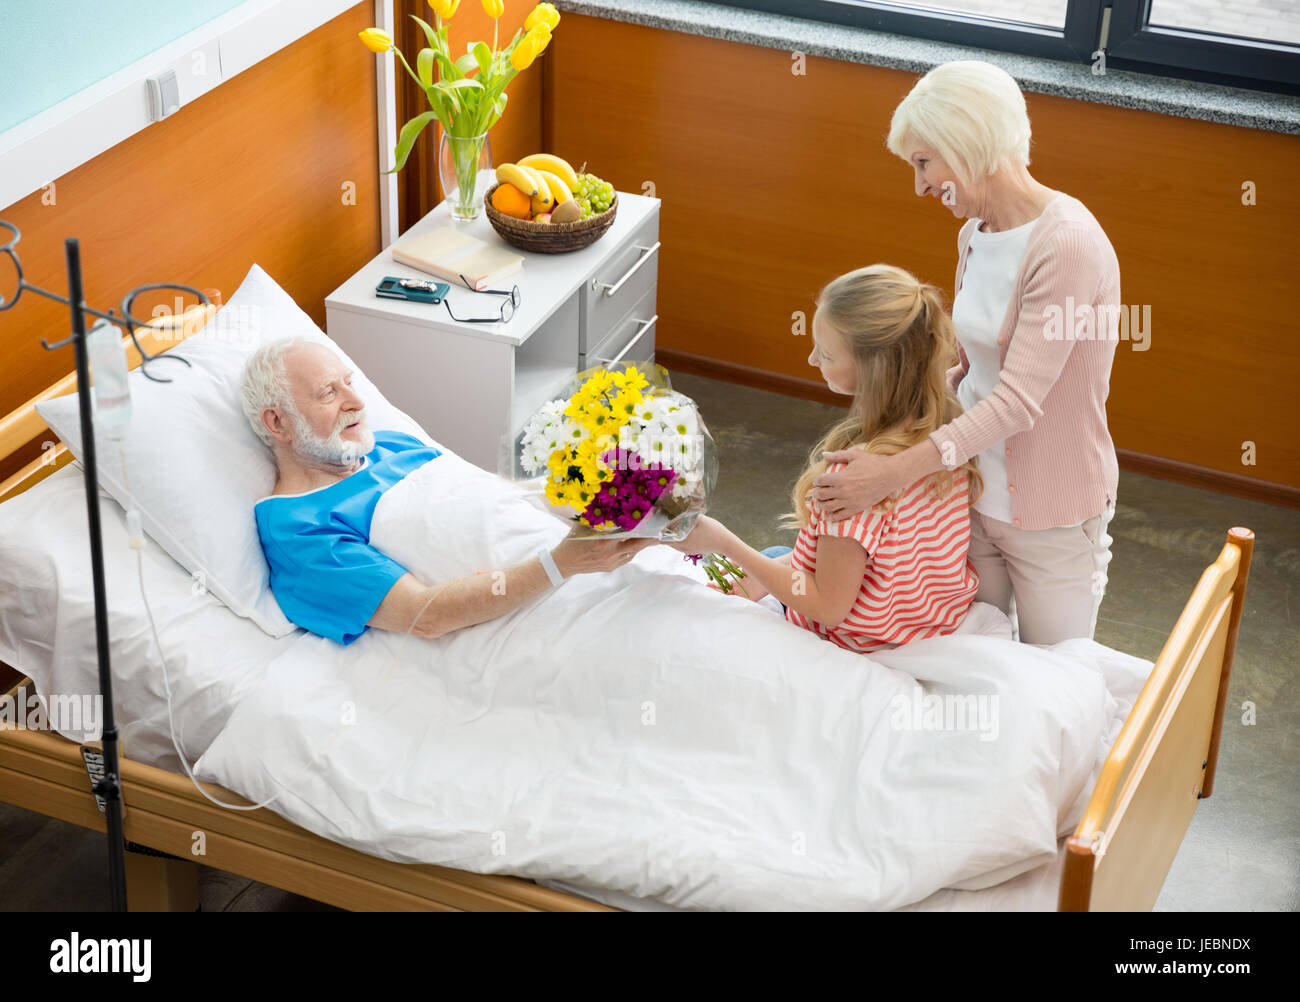 Навестить друга в больнице. Навещать больного в больнице. В больнице пациента навещают. Посещение больного в больнице родственниками.